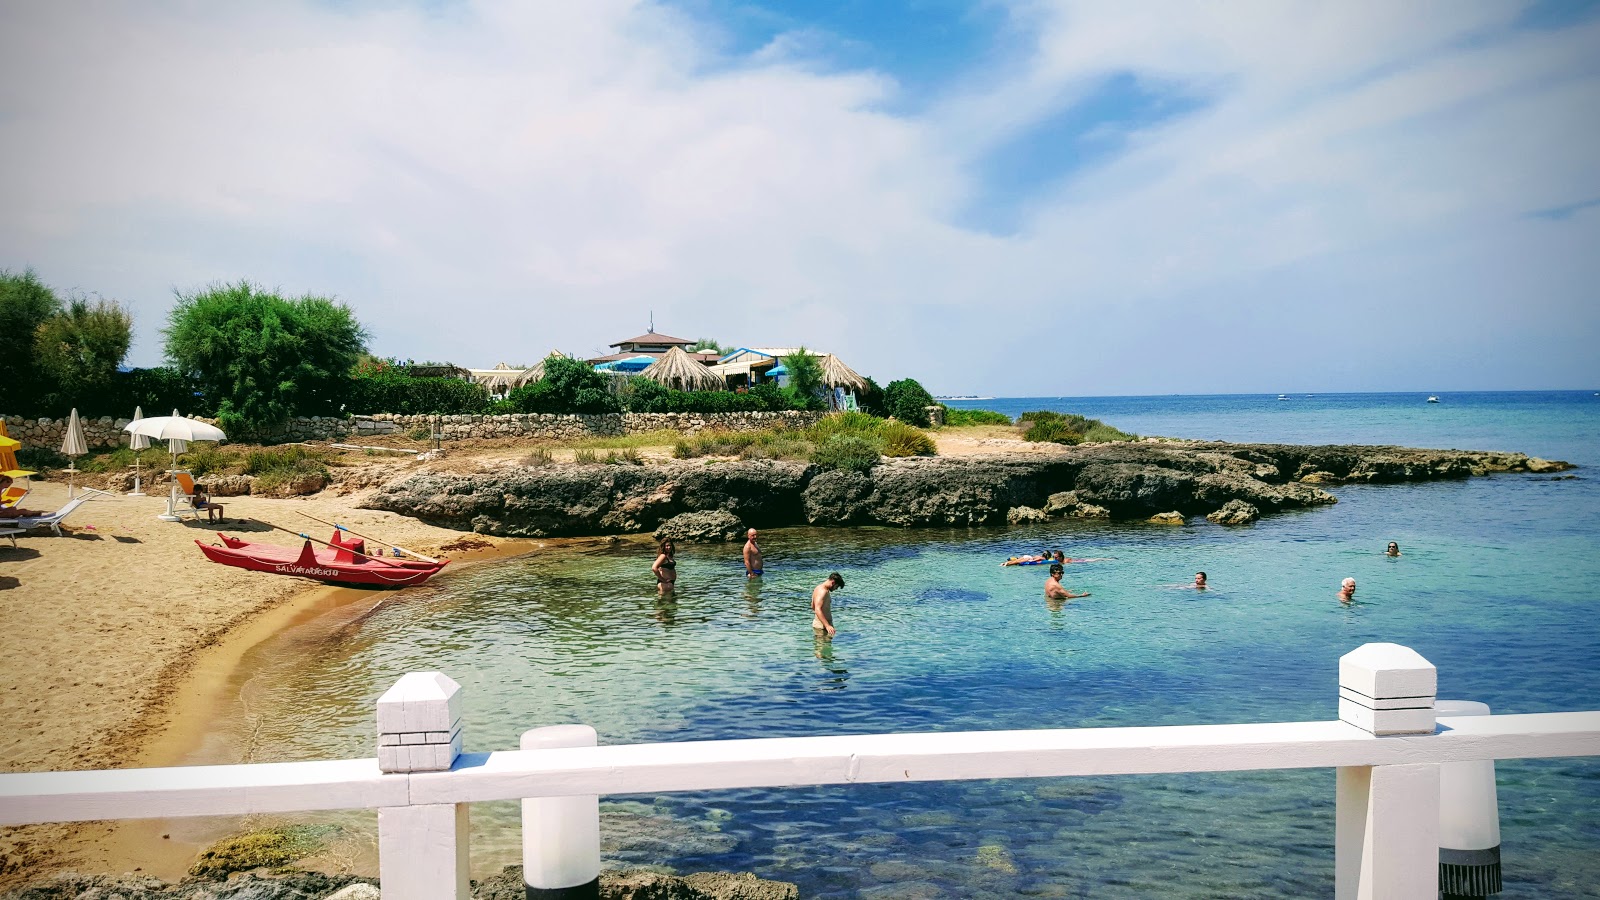 Fotografie cu La Fonte beach - locul popular printre cunoscătorii de relaxare